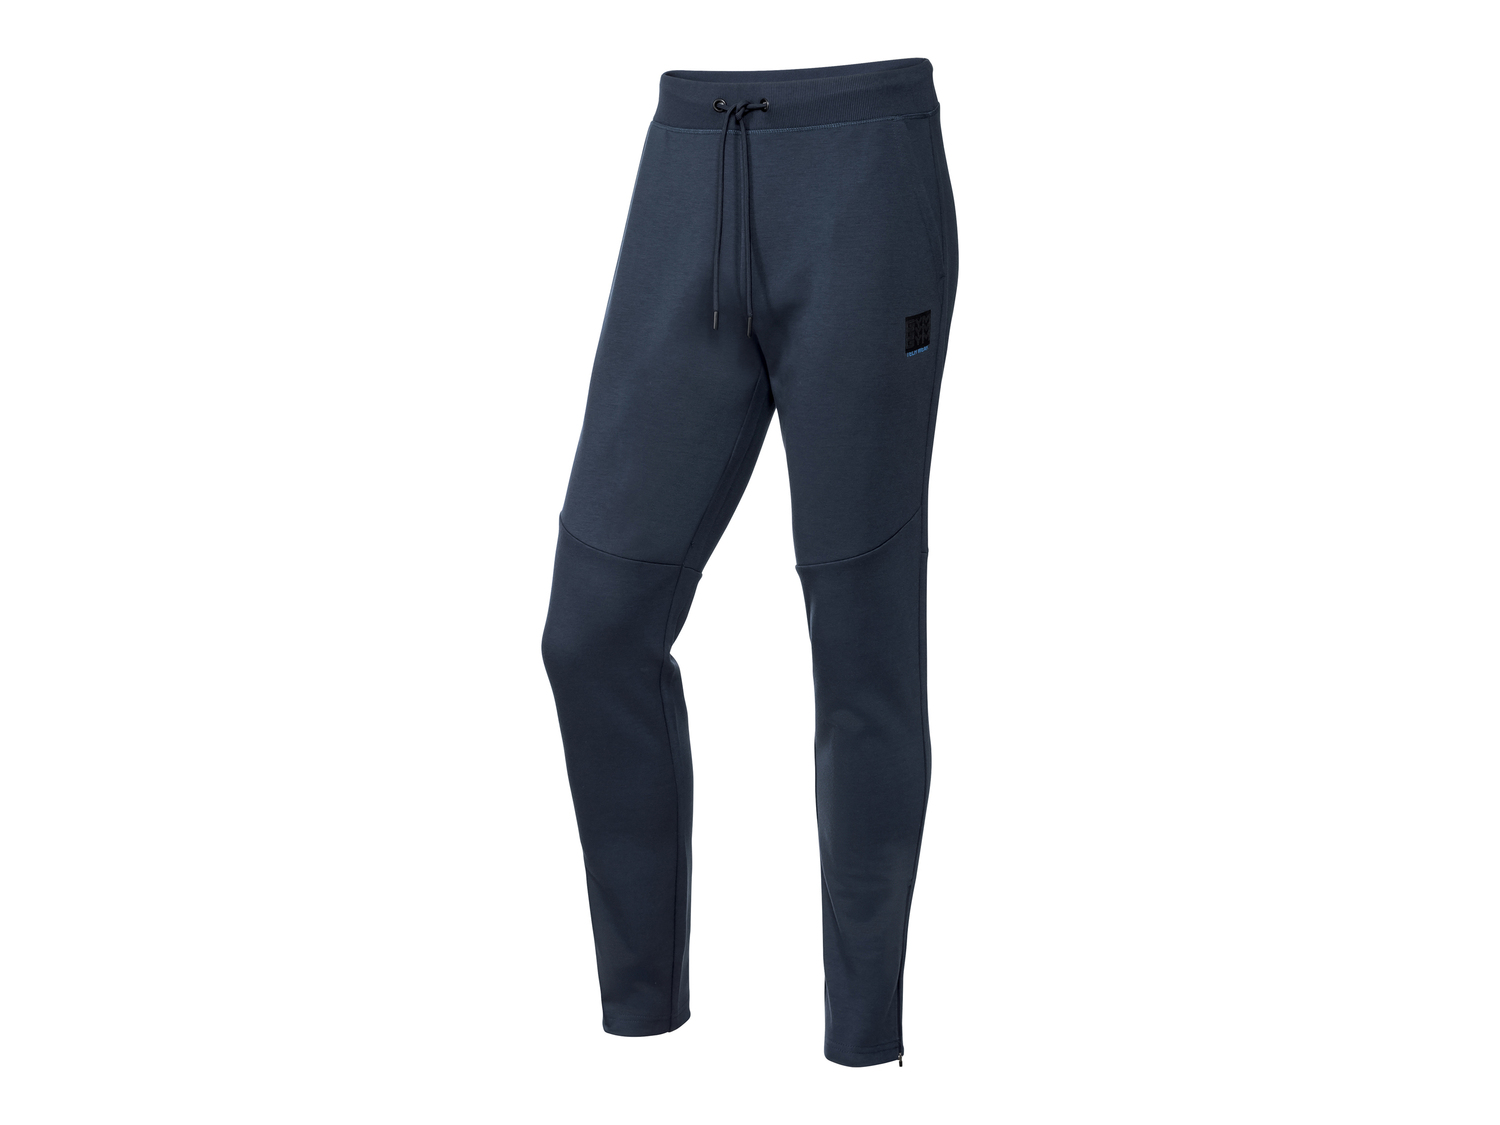 Pantaloni sportivi da uomo Crivit, prezzo 8.99 &#8364; 
Misure: S-XL
Taglie ...